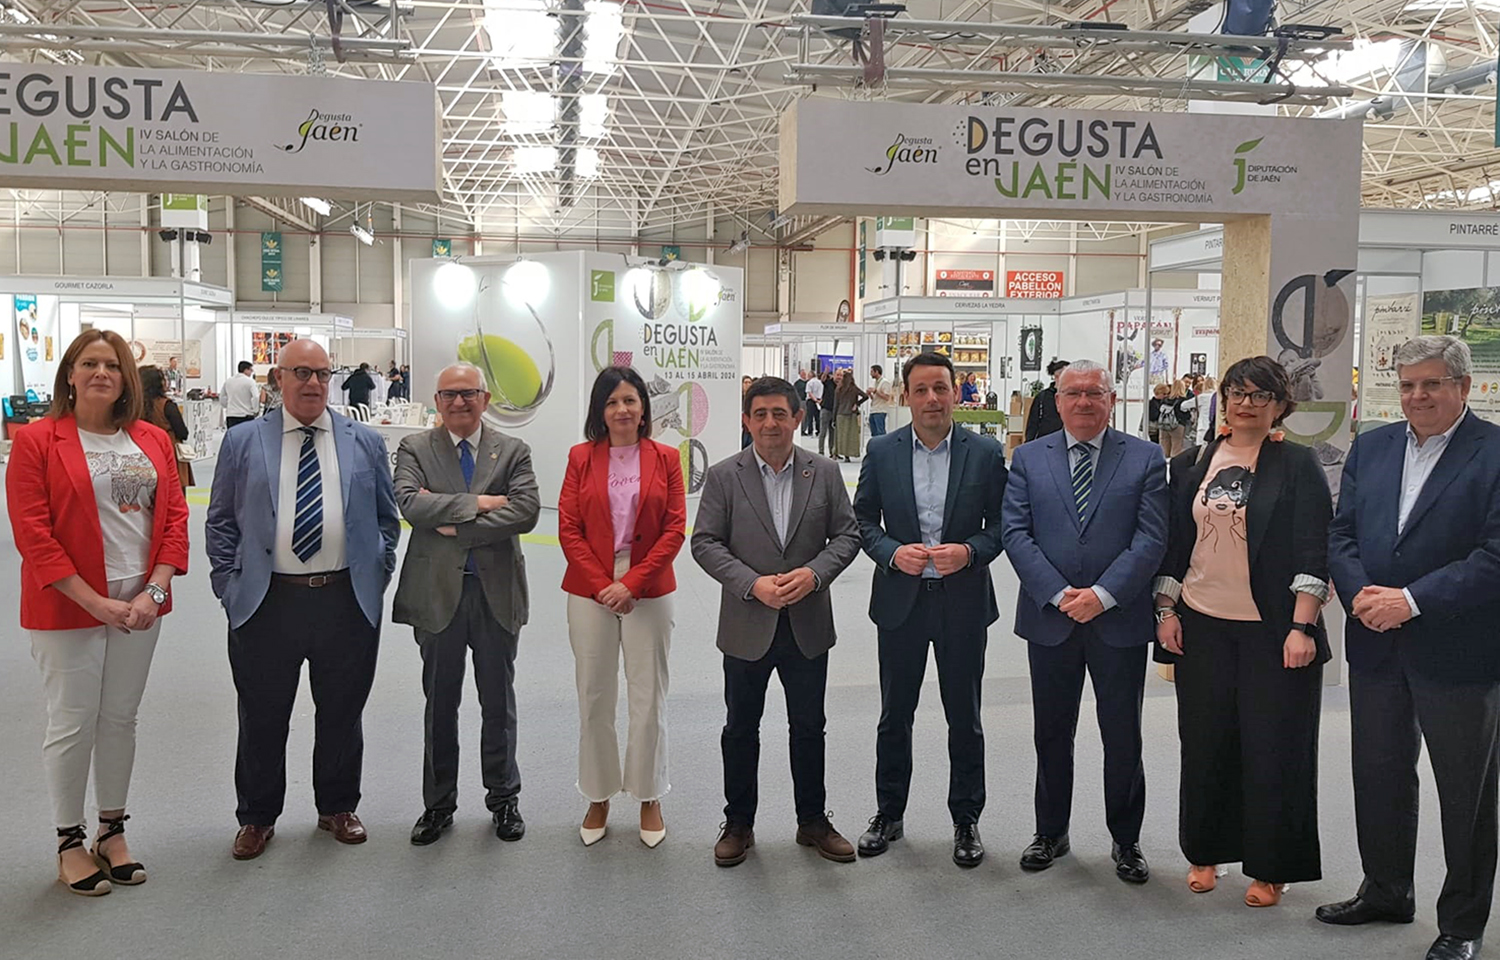 Masiva presencia de público en el IV Salón Degusta en Jaén con más de 50 actividades ligadas a la gastronomía y a los productos jienenses